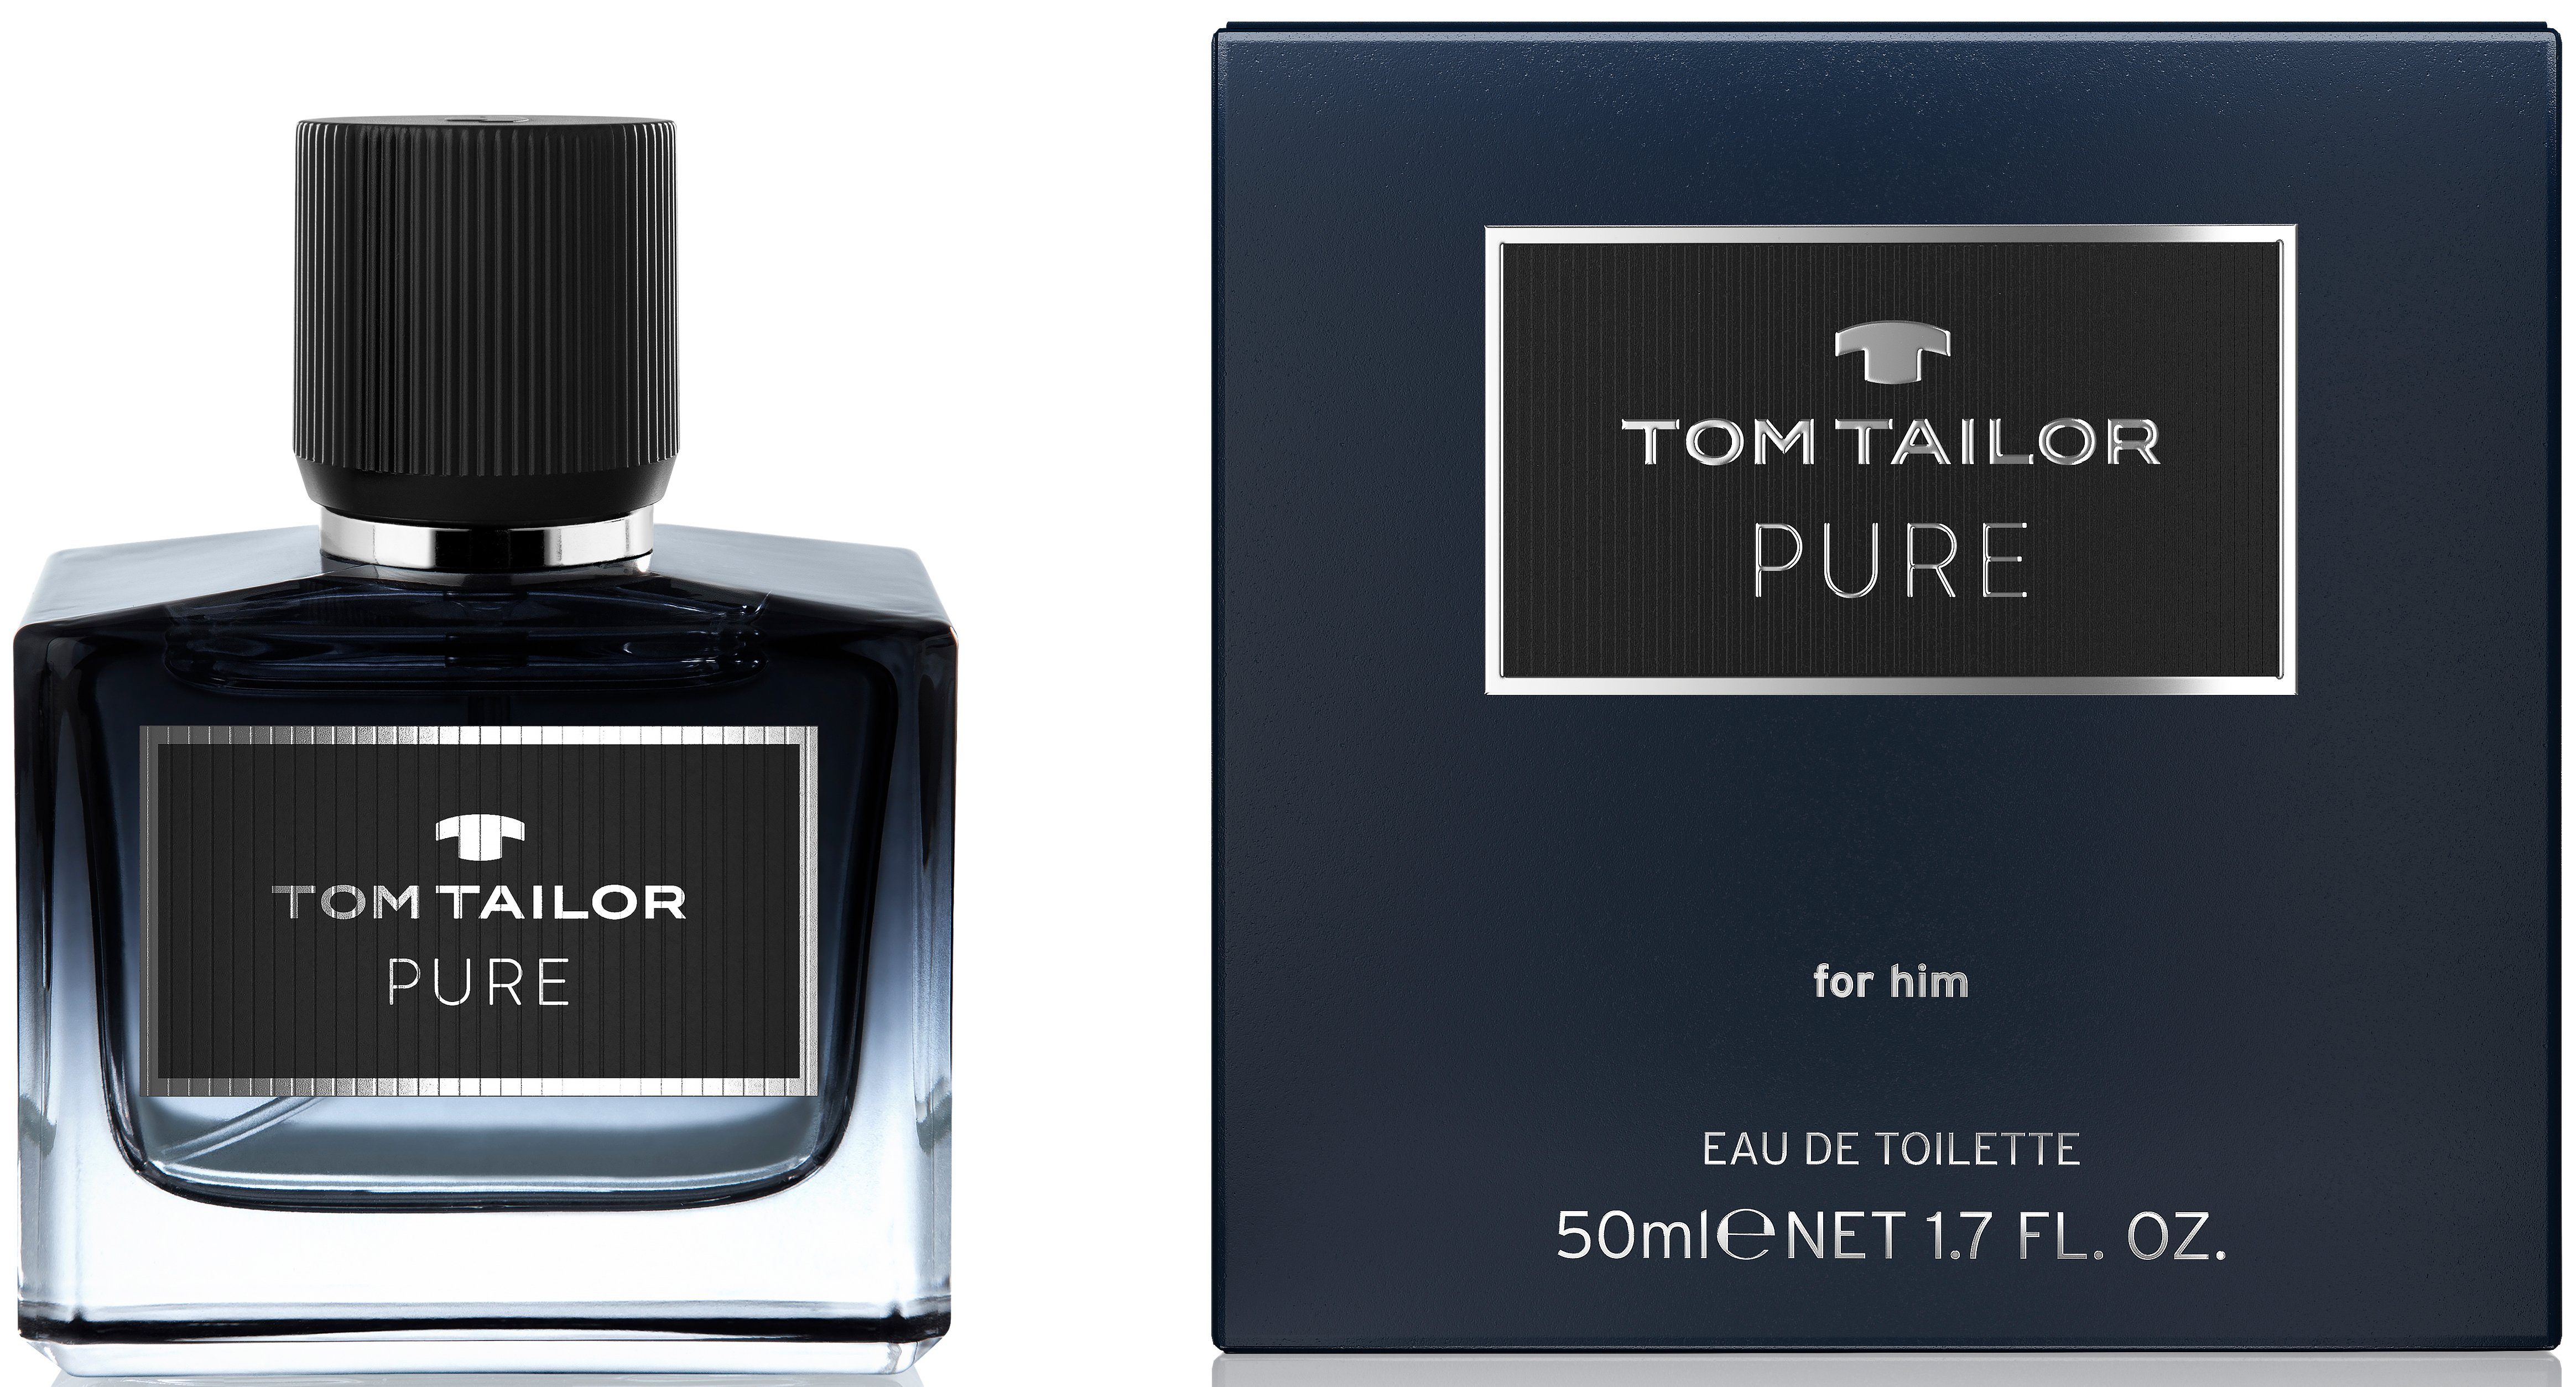 TOM TAILOR Pure Toilette Eau de for him